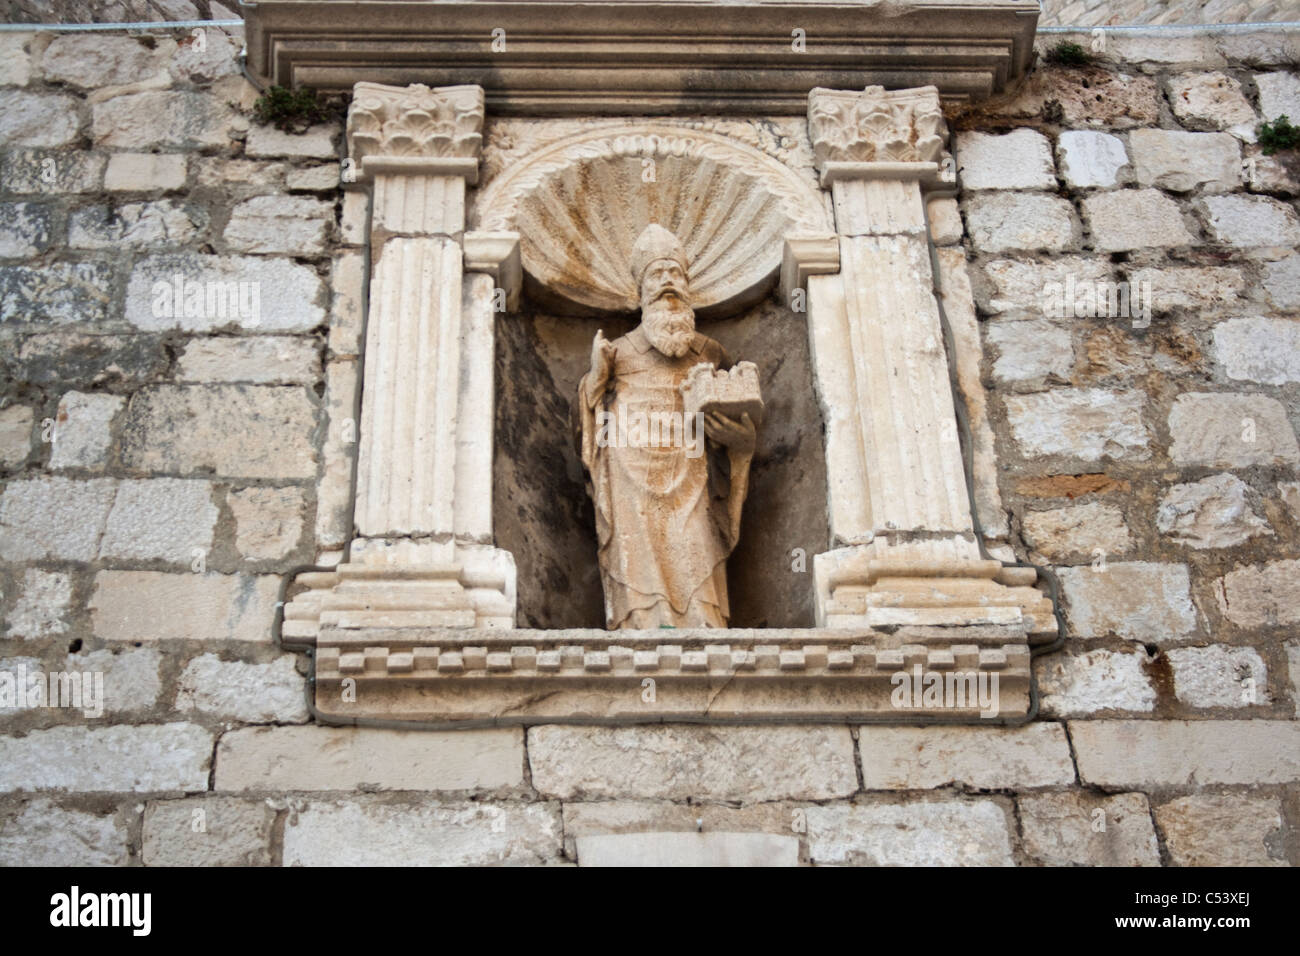 Croatie, Dubrovnik : sculpture de Saint Blaise, le saint patron de Dubrovnik, sur un mur Banque D'Images